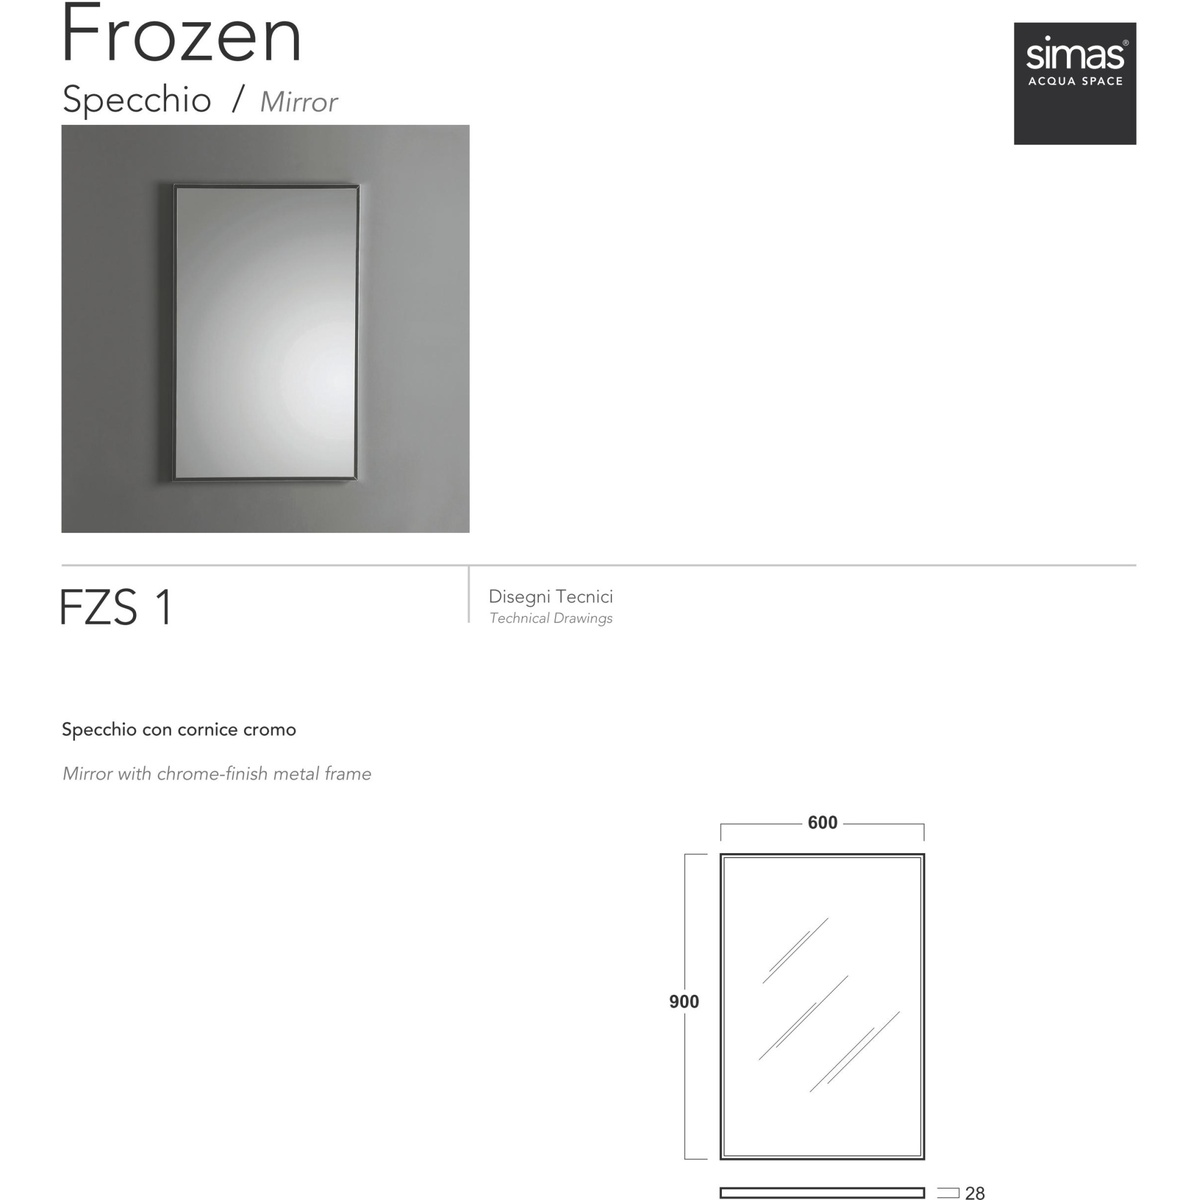 Specchio rettangolare con cornice in metallo cromato stile moderno 90x60 cm  - Frozen, Simas